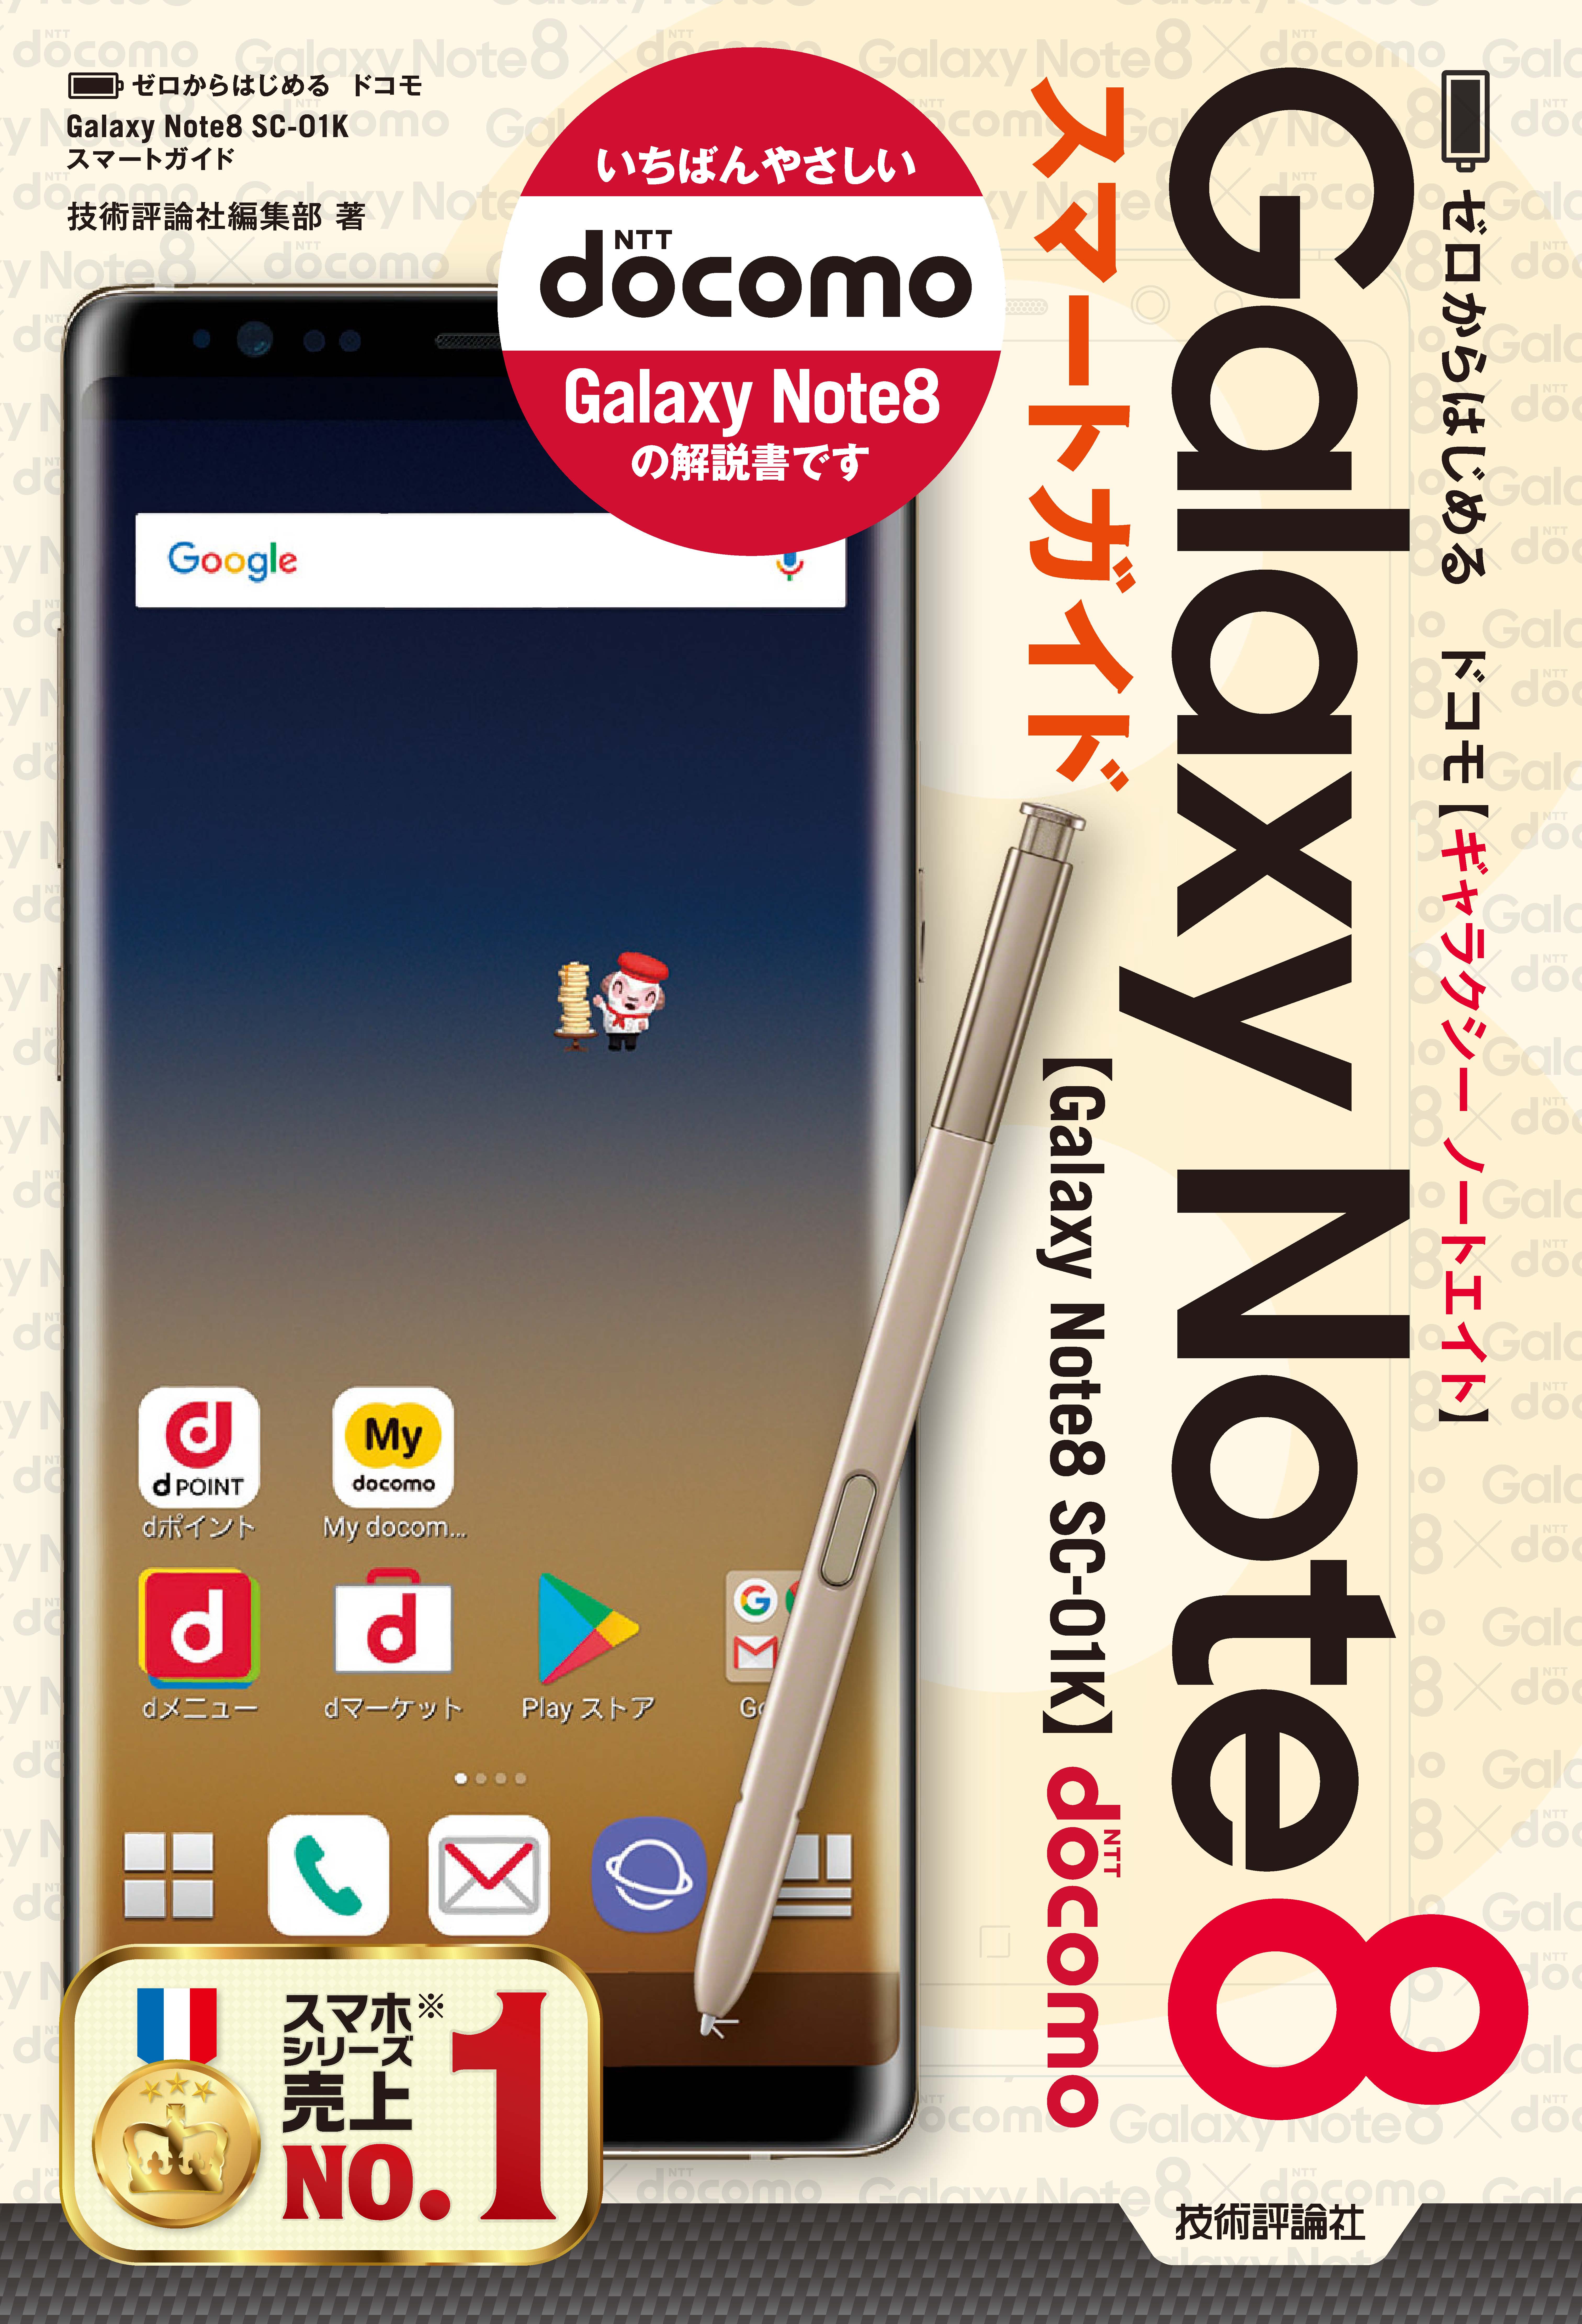 ゼロからはじめる ドコモ Galaxy Note8 SC-01K スマートガイド - 技術